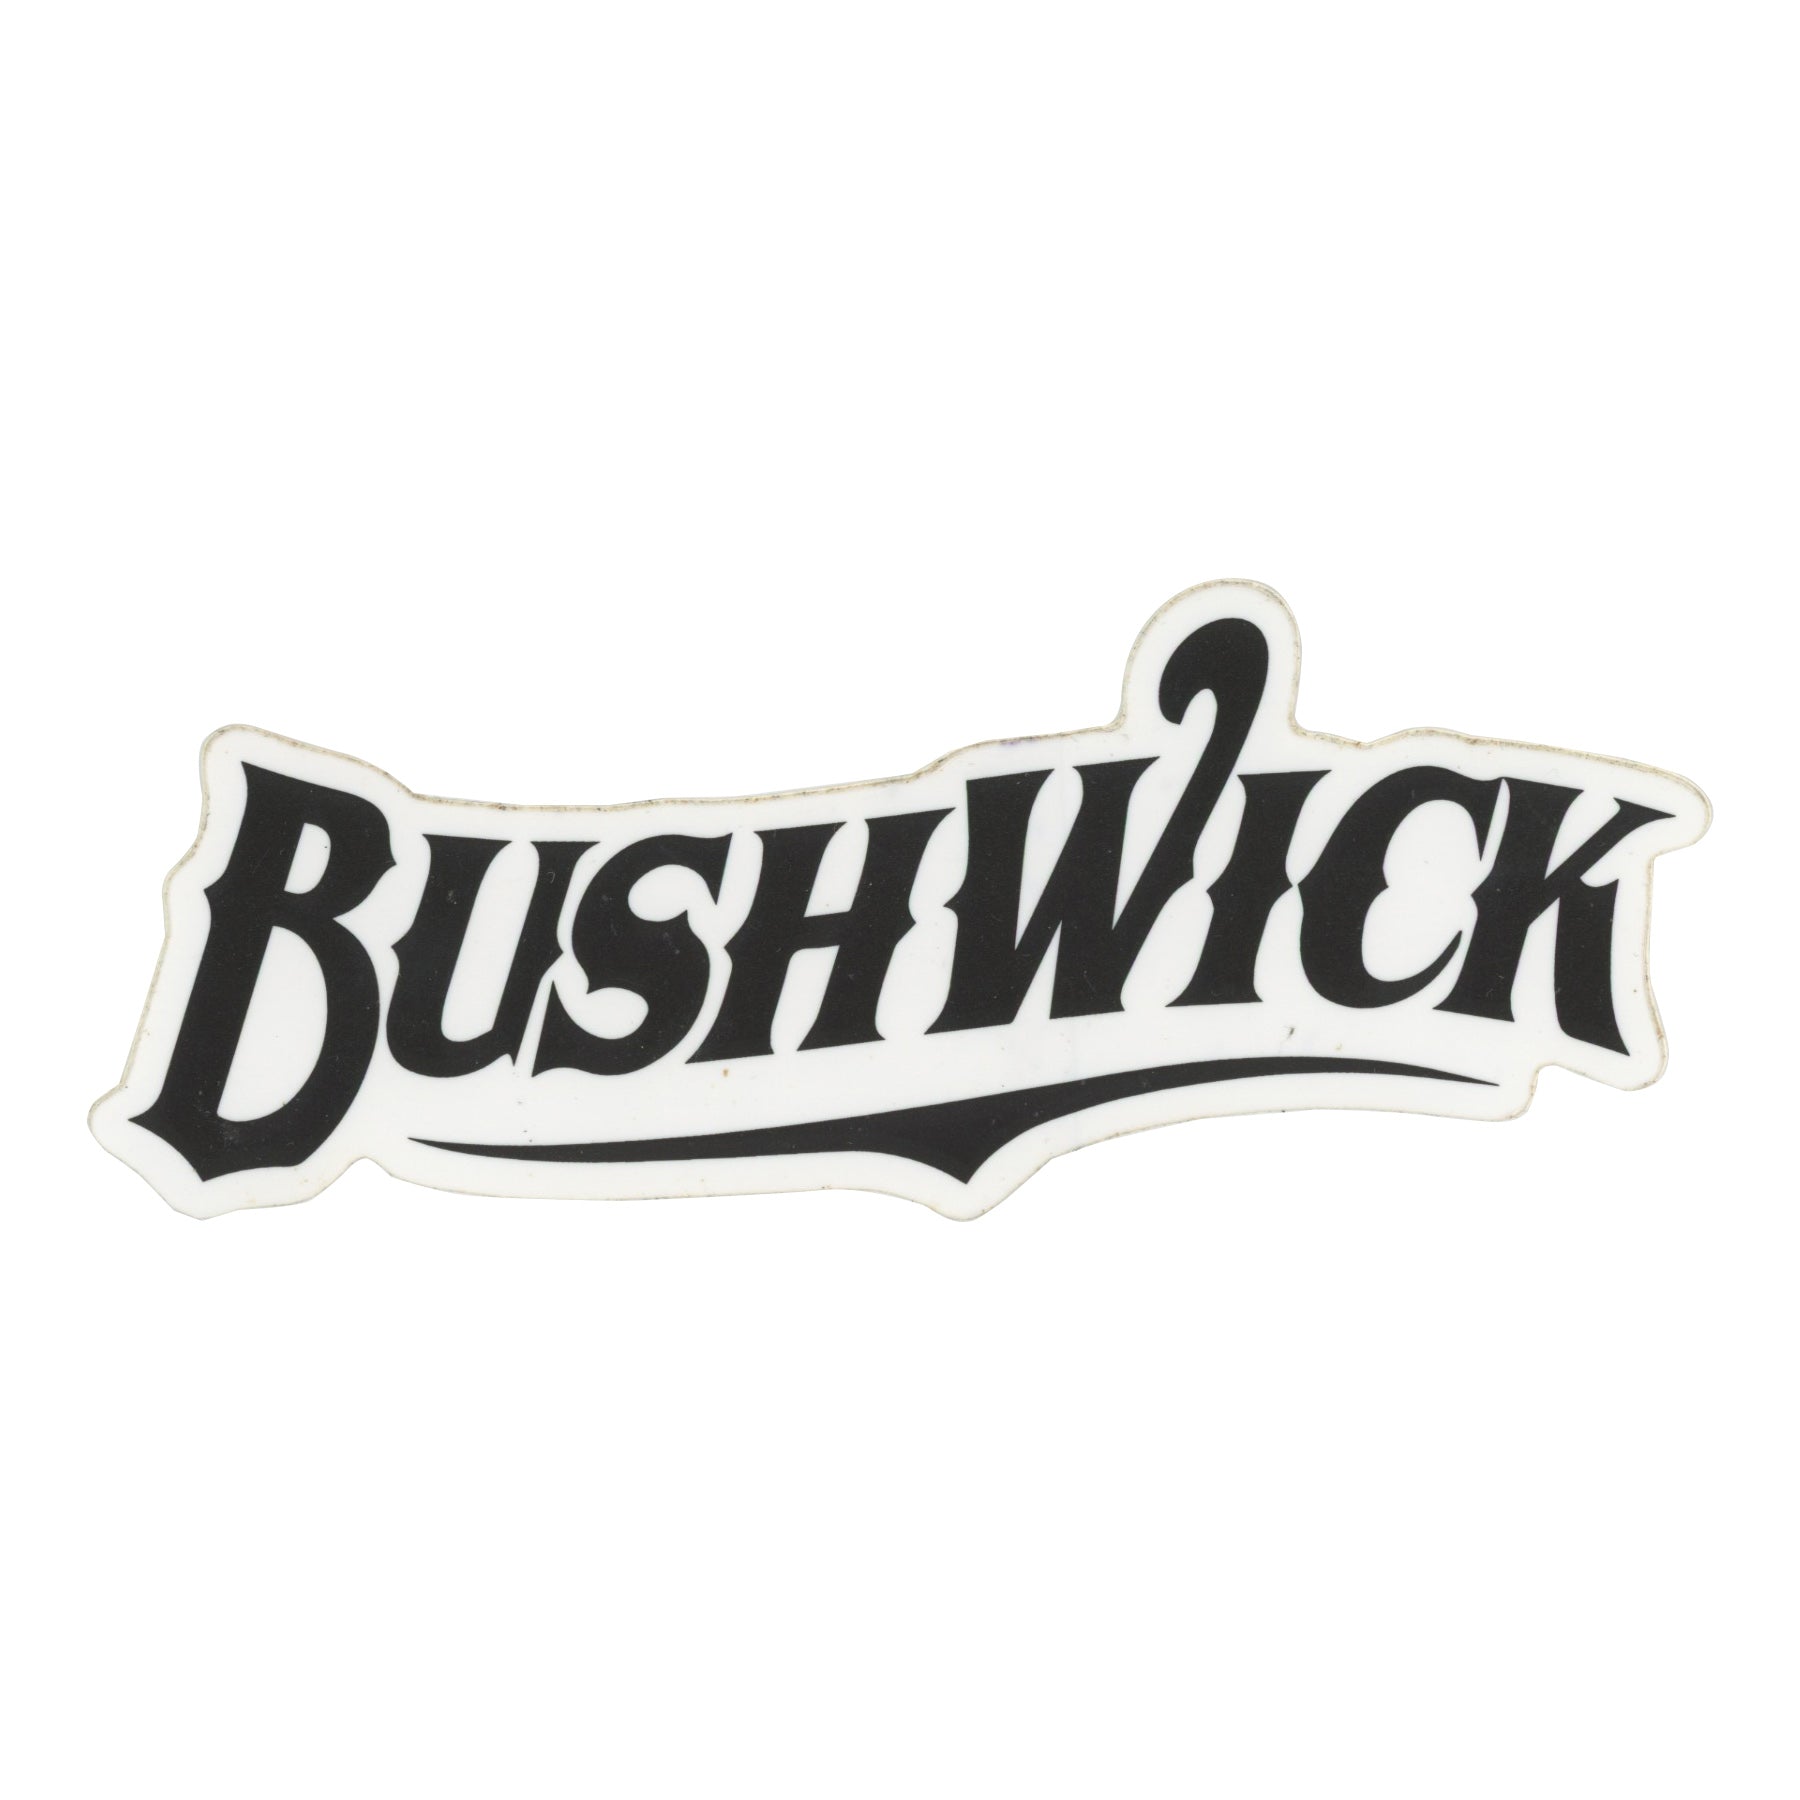 Bushwick Black Sticker